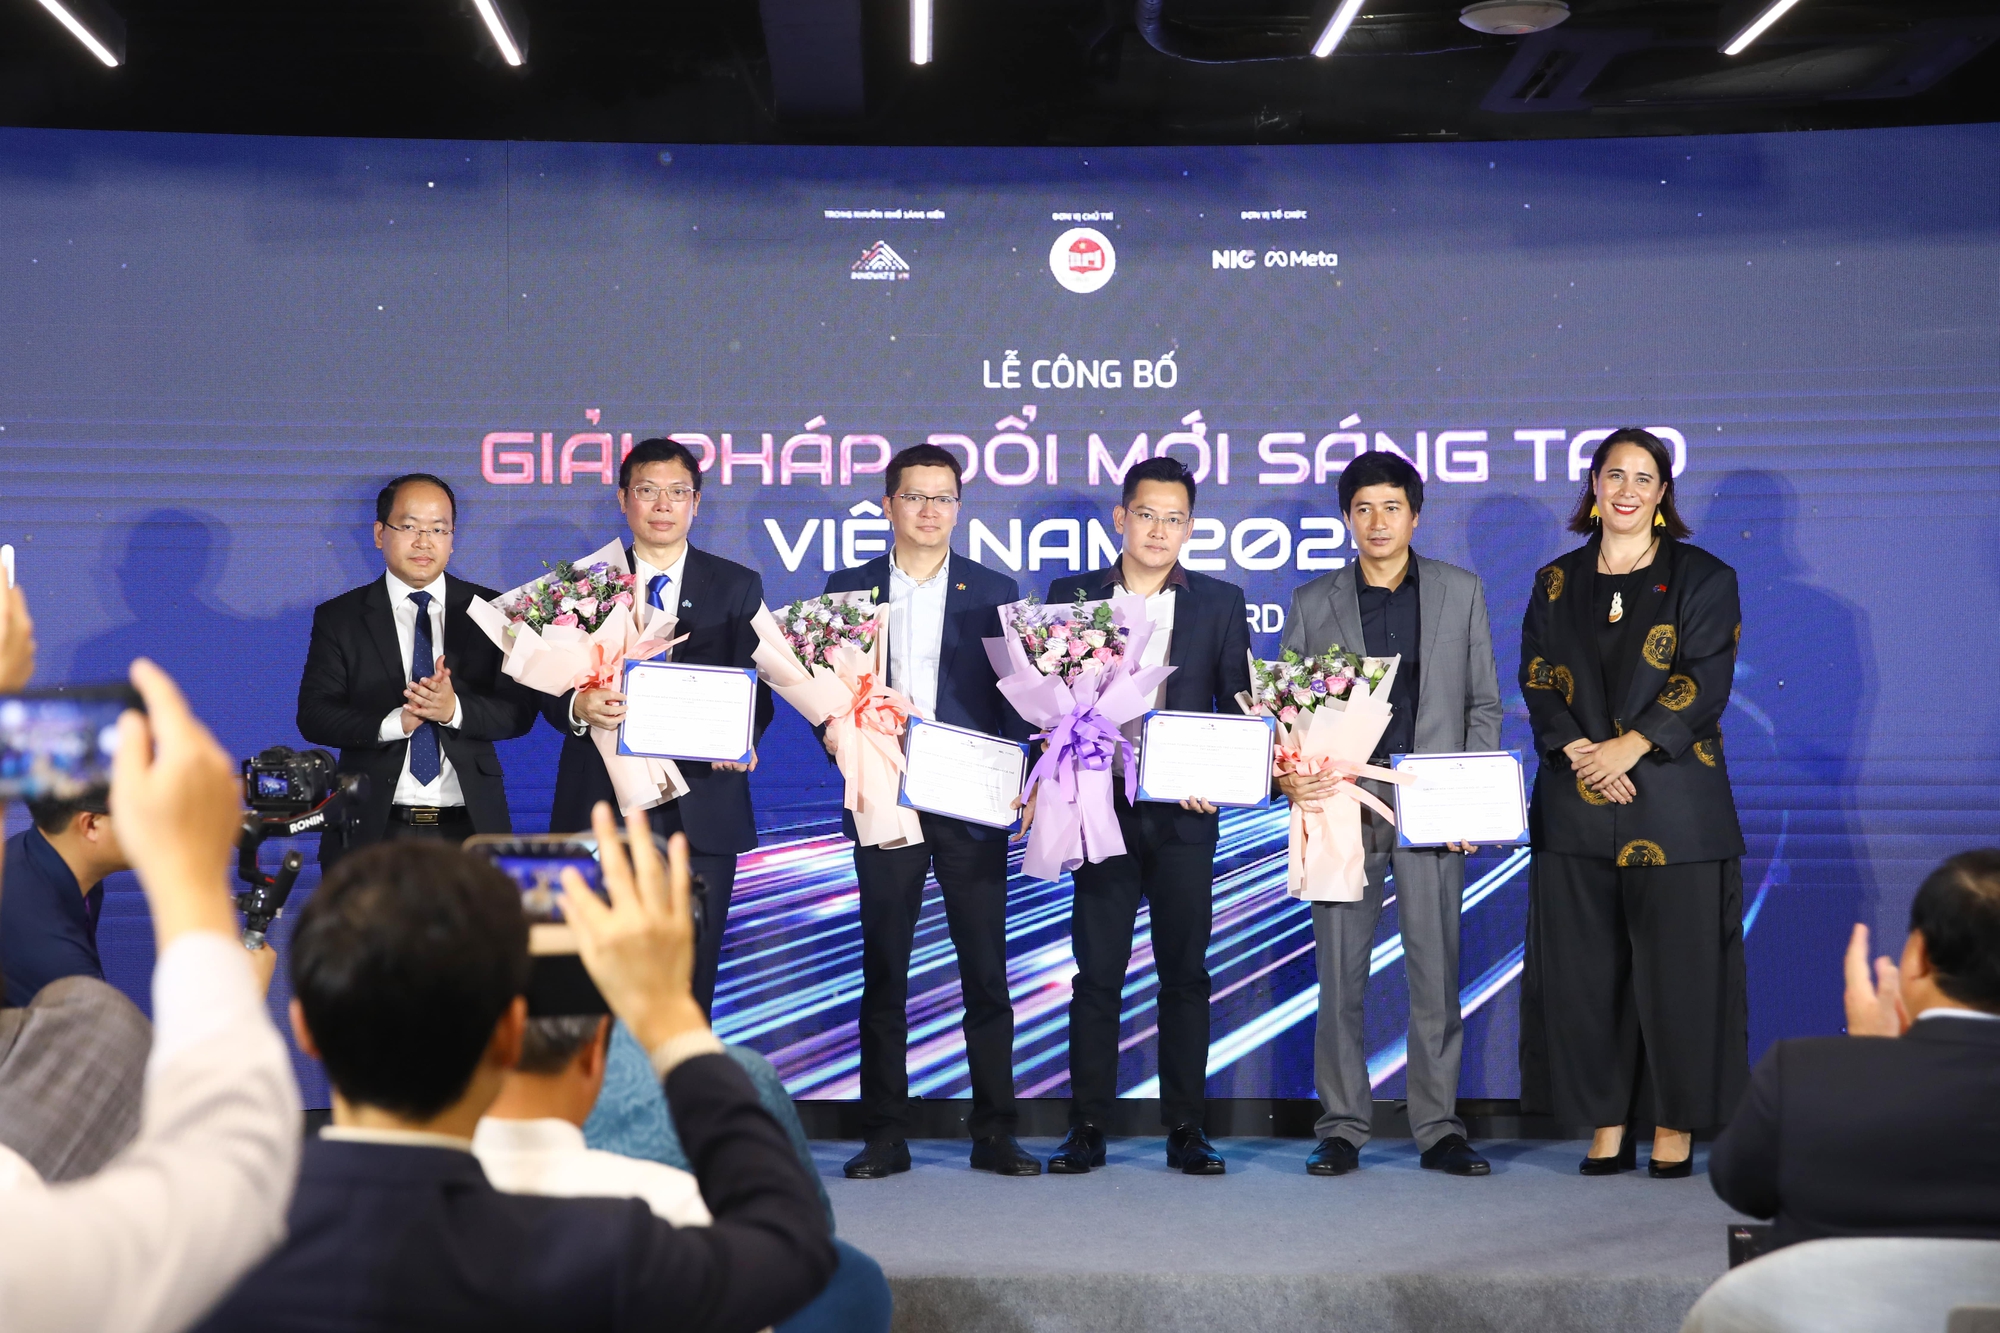 Giải pháp Made by CMC được vinh danh Giải pháp đổi mới sáng tạo Việt Nam 2023 - Ảnh 3.